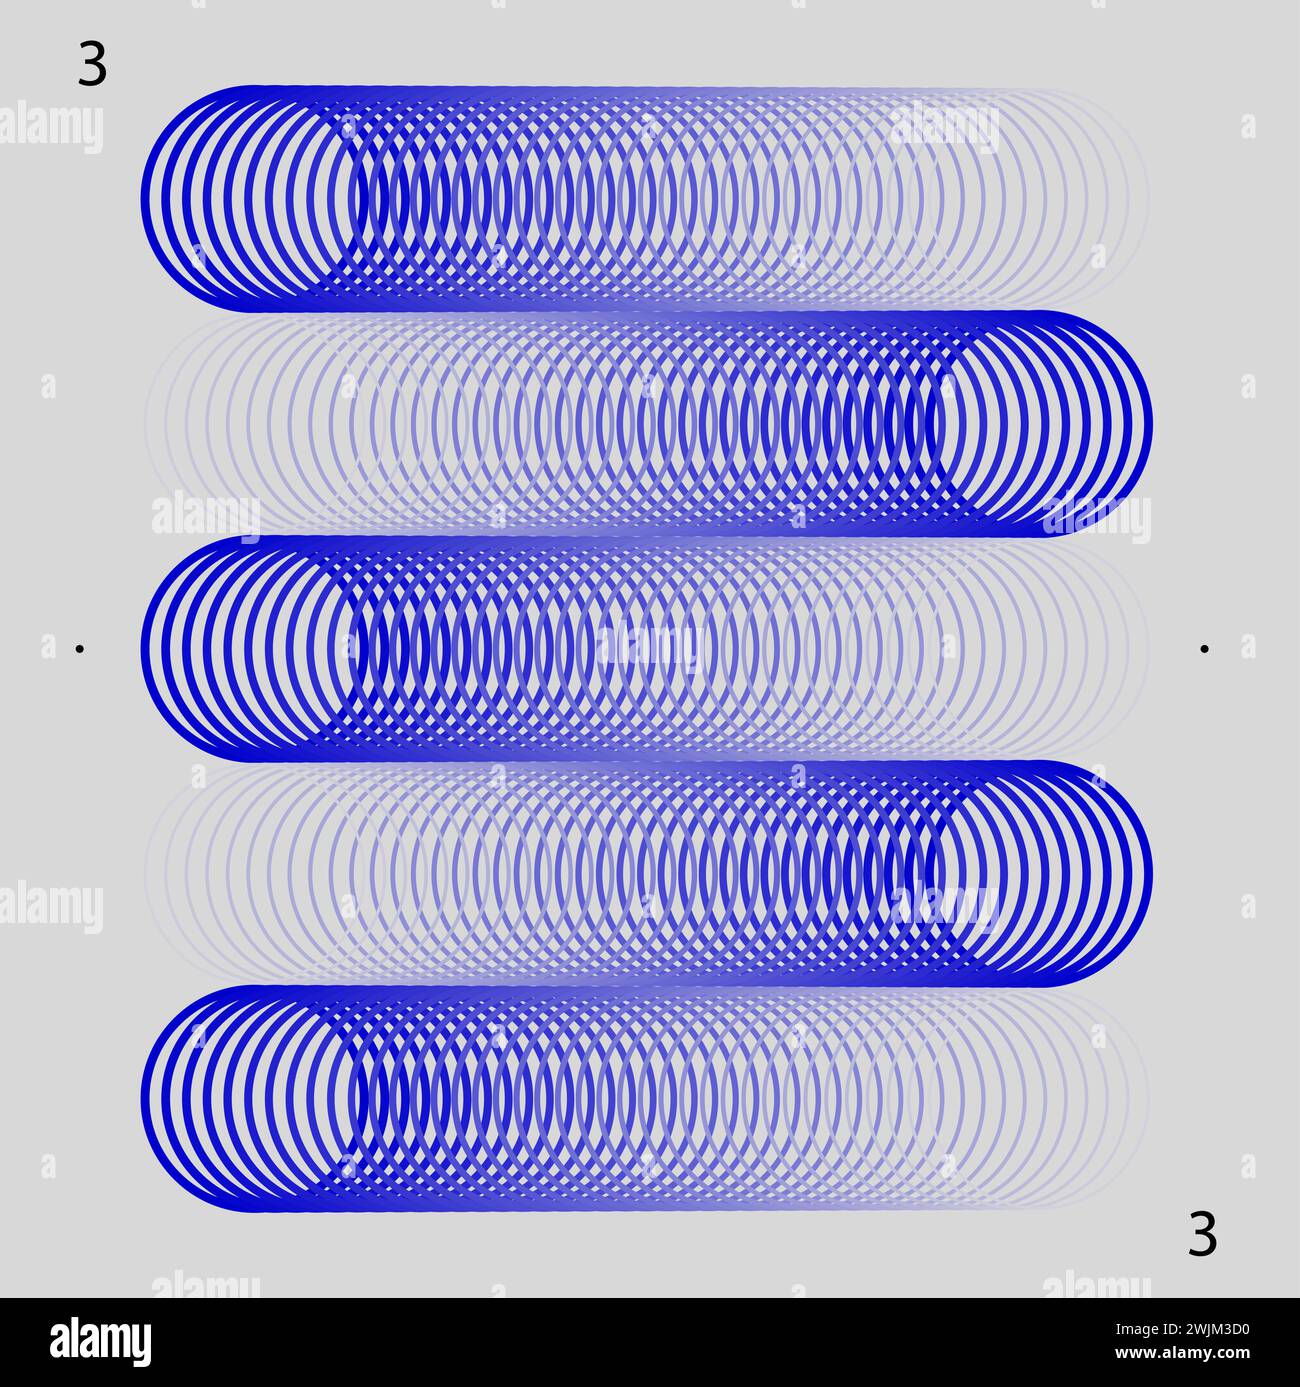 Illusions optiques cylindriques abstraites bleues avec des motifs circulaires concentriques sur un fond blanc. Esthétique moderne, minimaliste Illustration de Vecteur